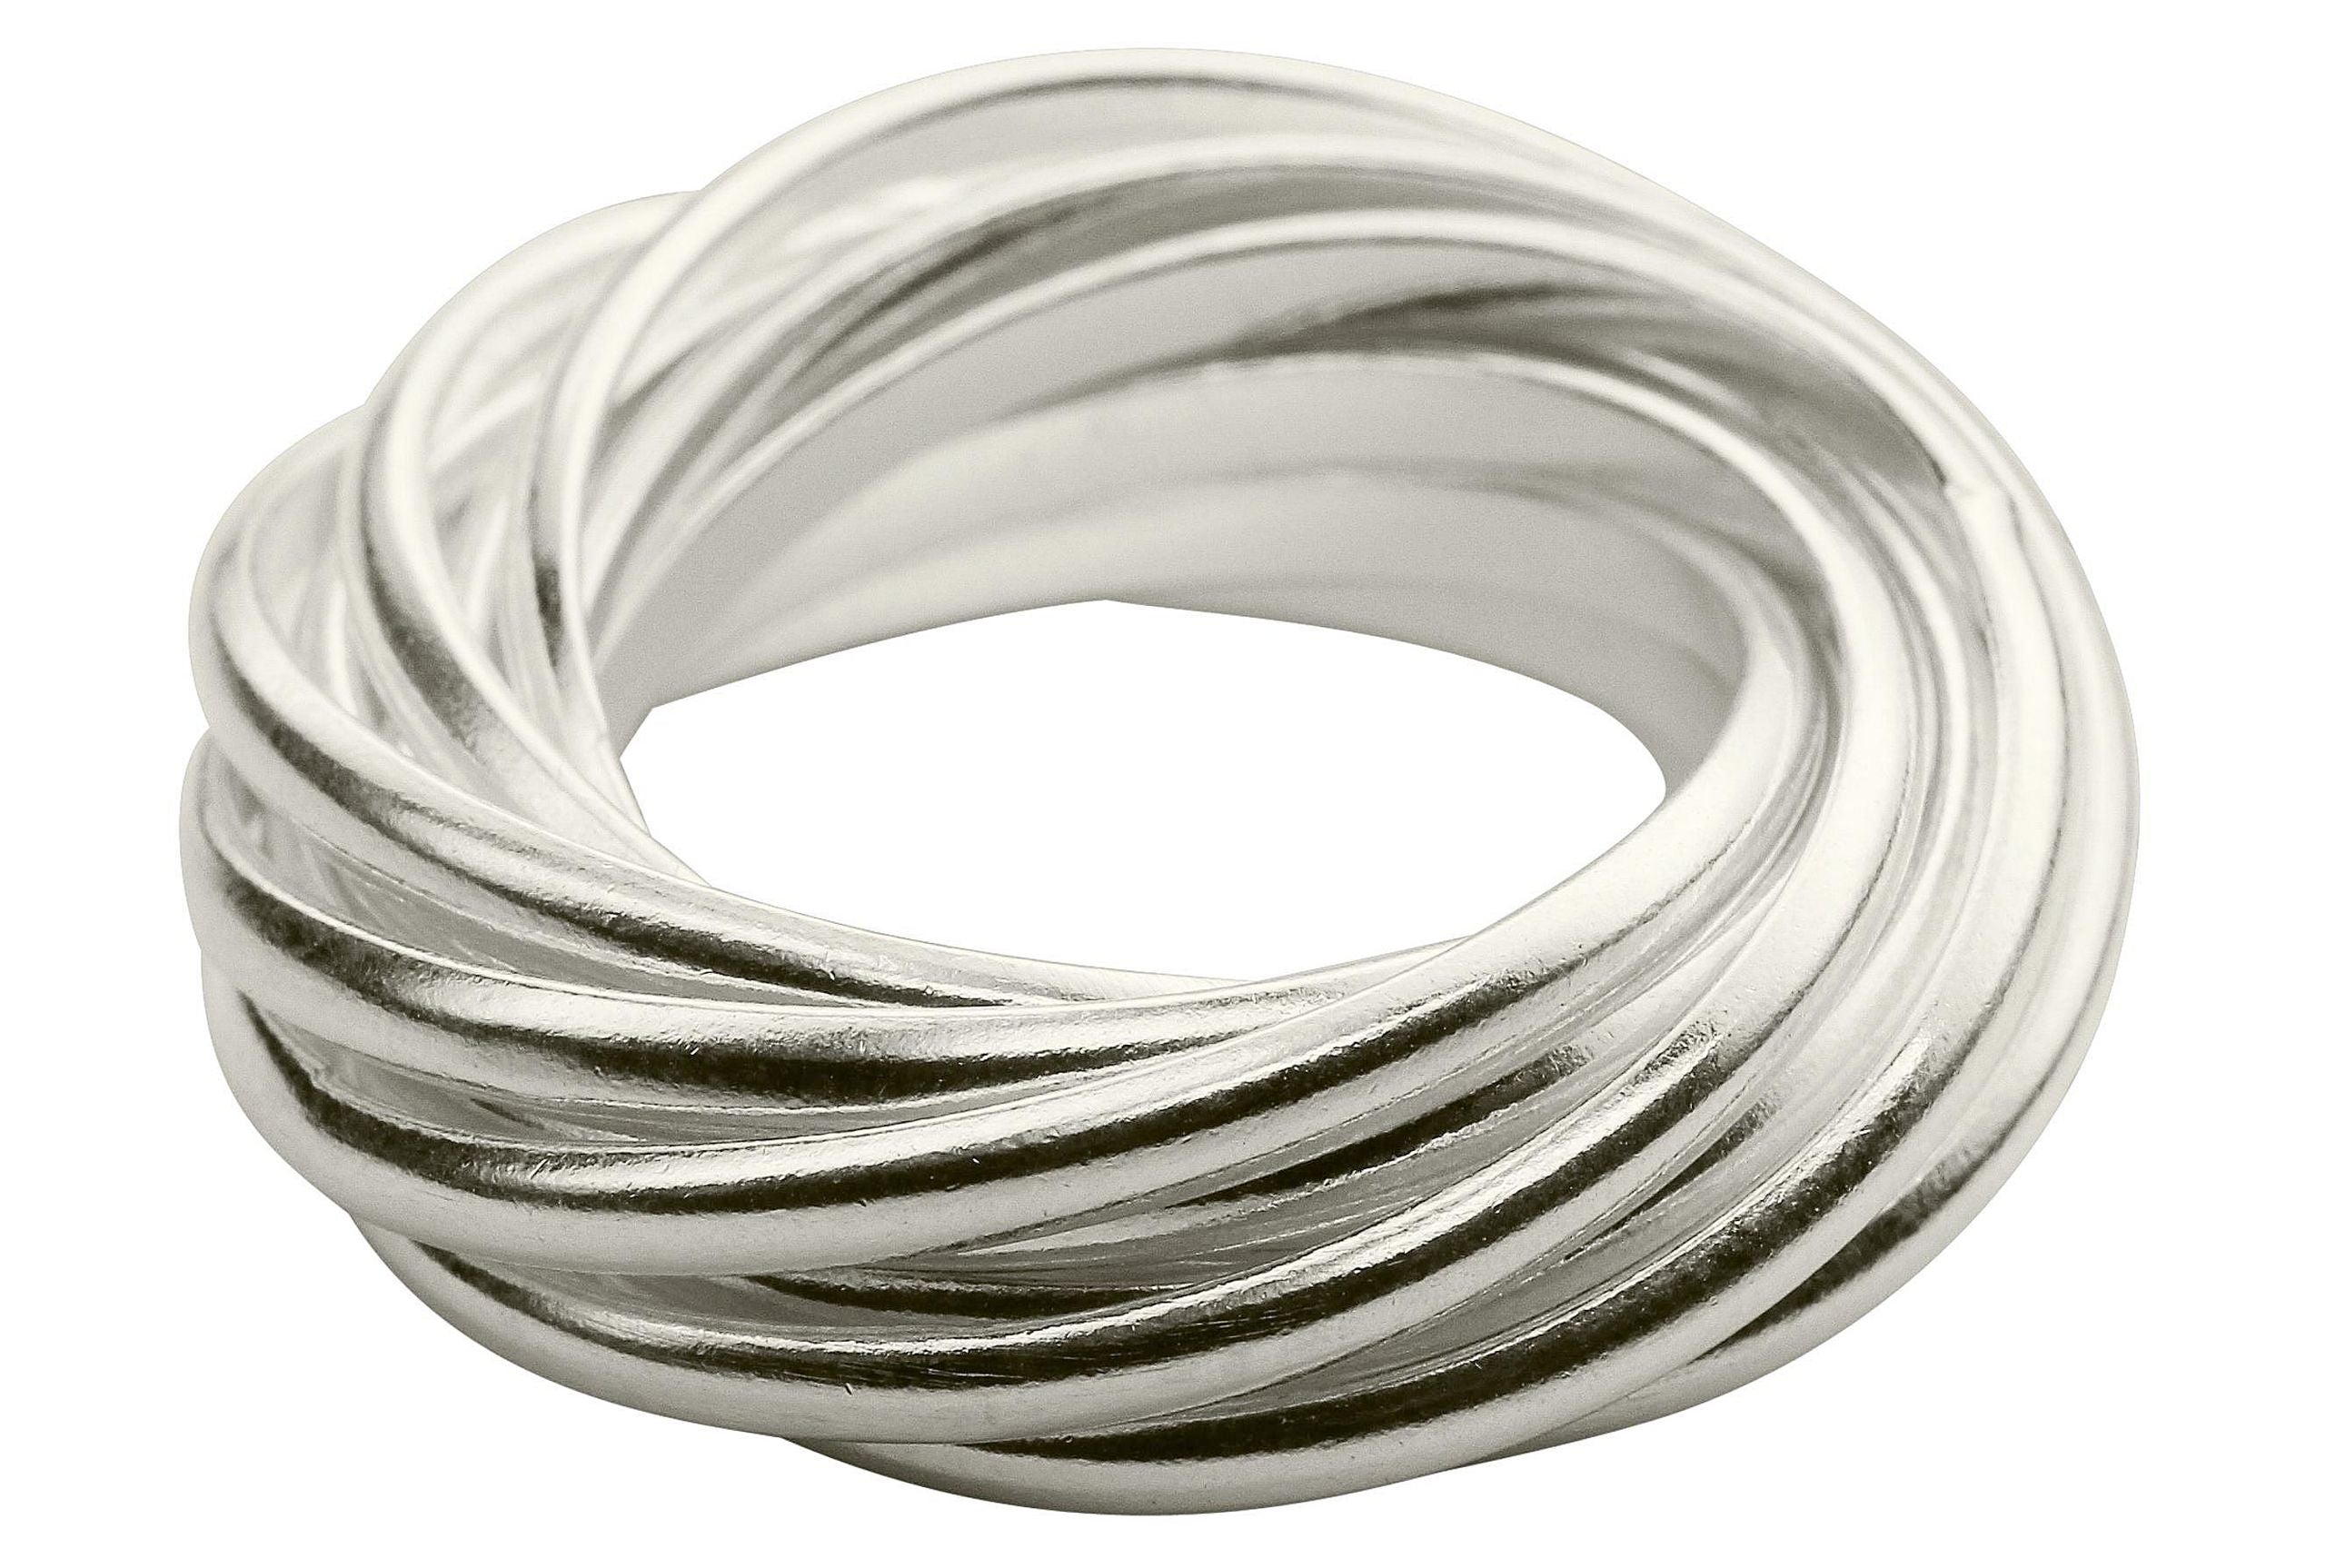 Mehrfachring für Damen aus Silber in den Größen 64 bis 70, bestehend aus zwölf einzelnen kleinen Ringen mit glänzender Oberfläche.